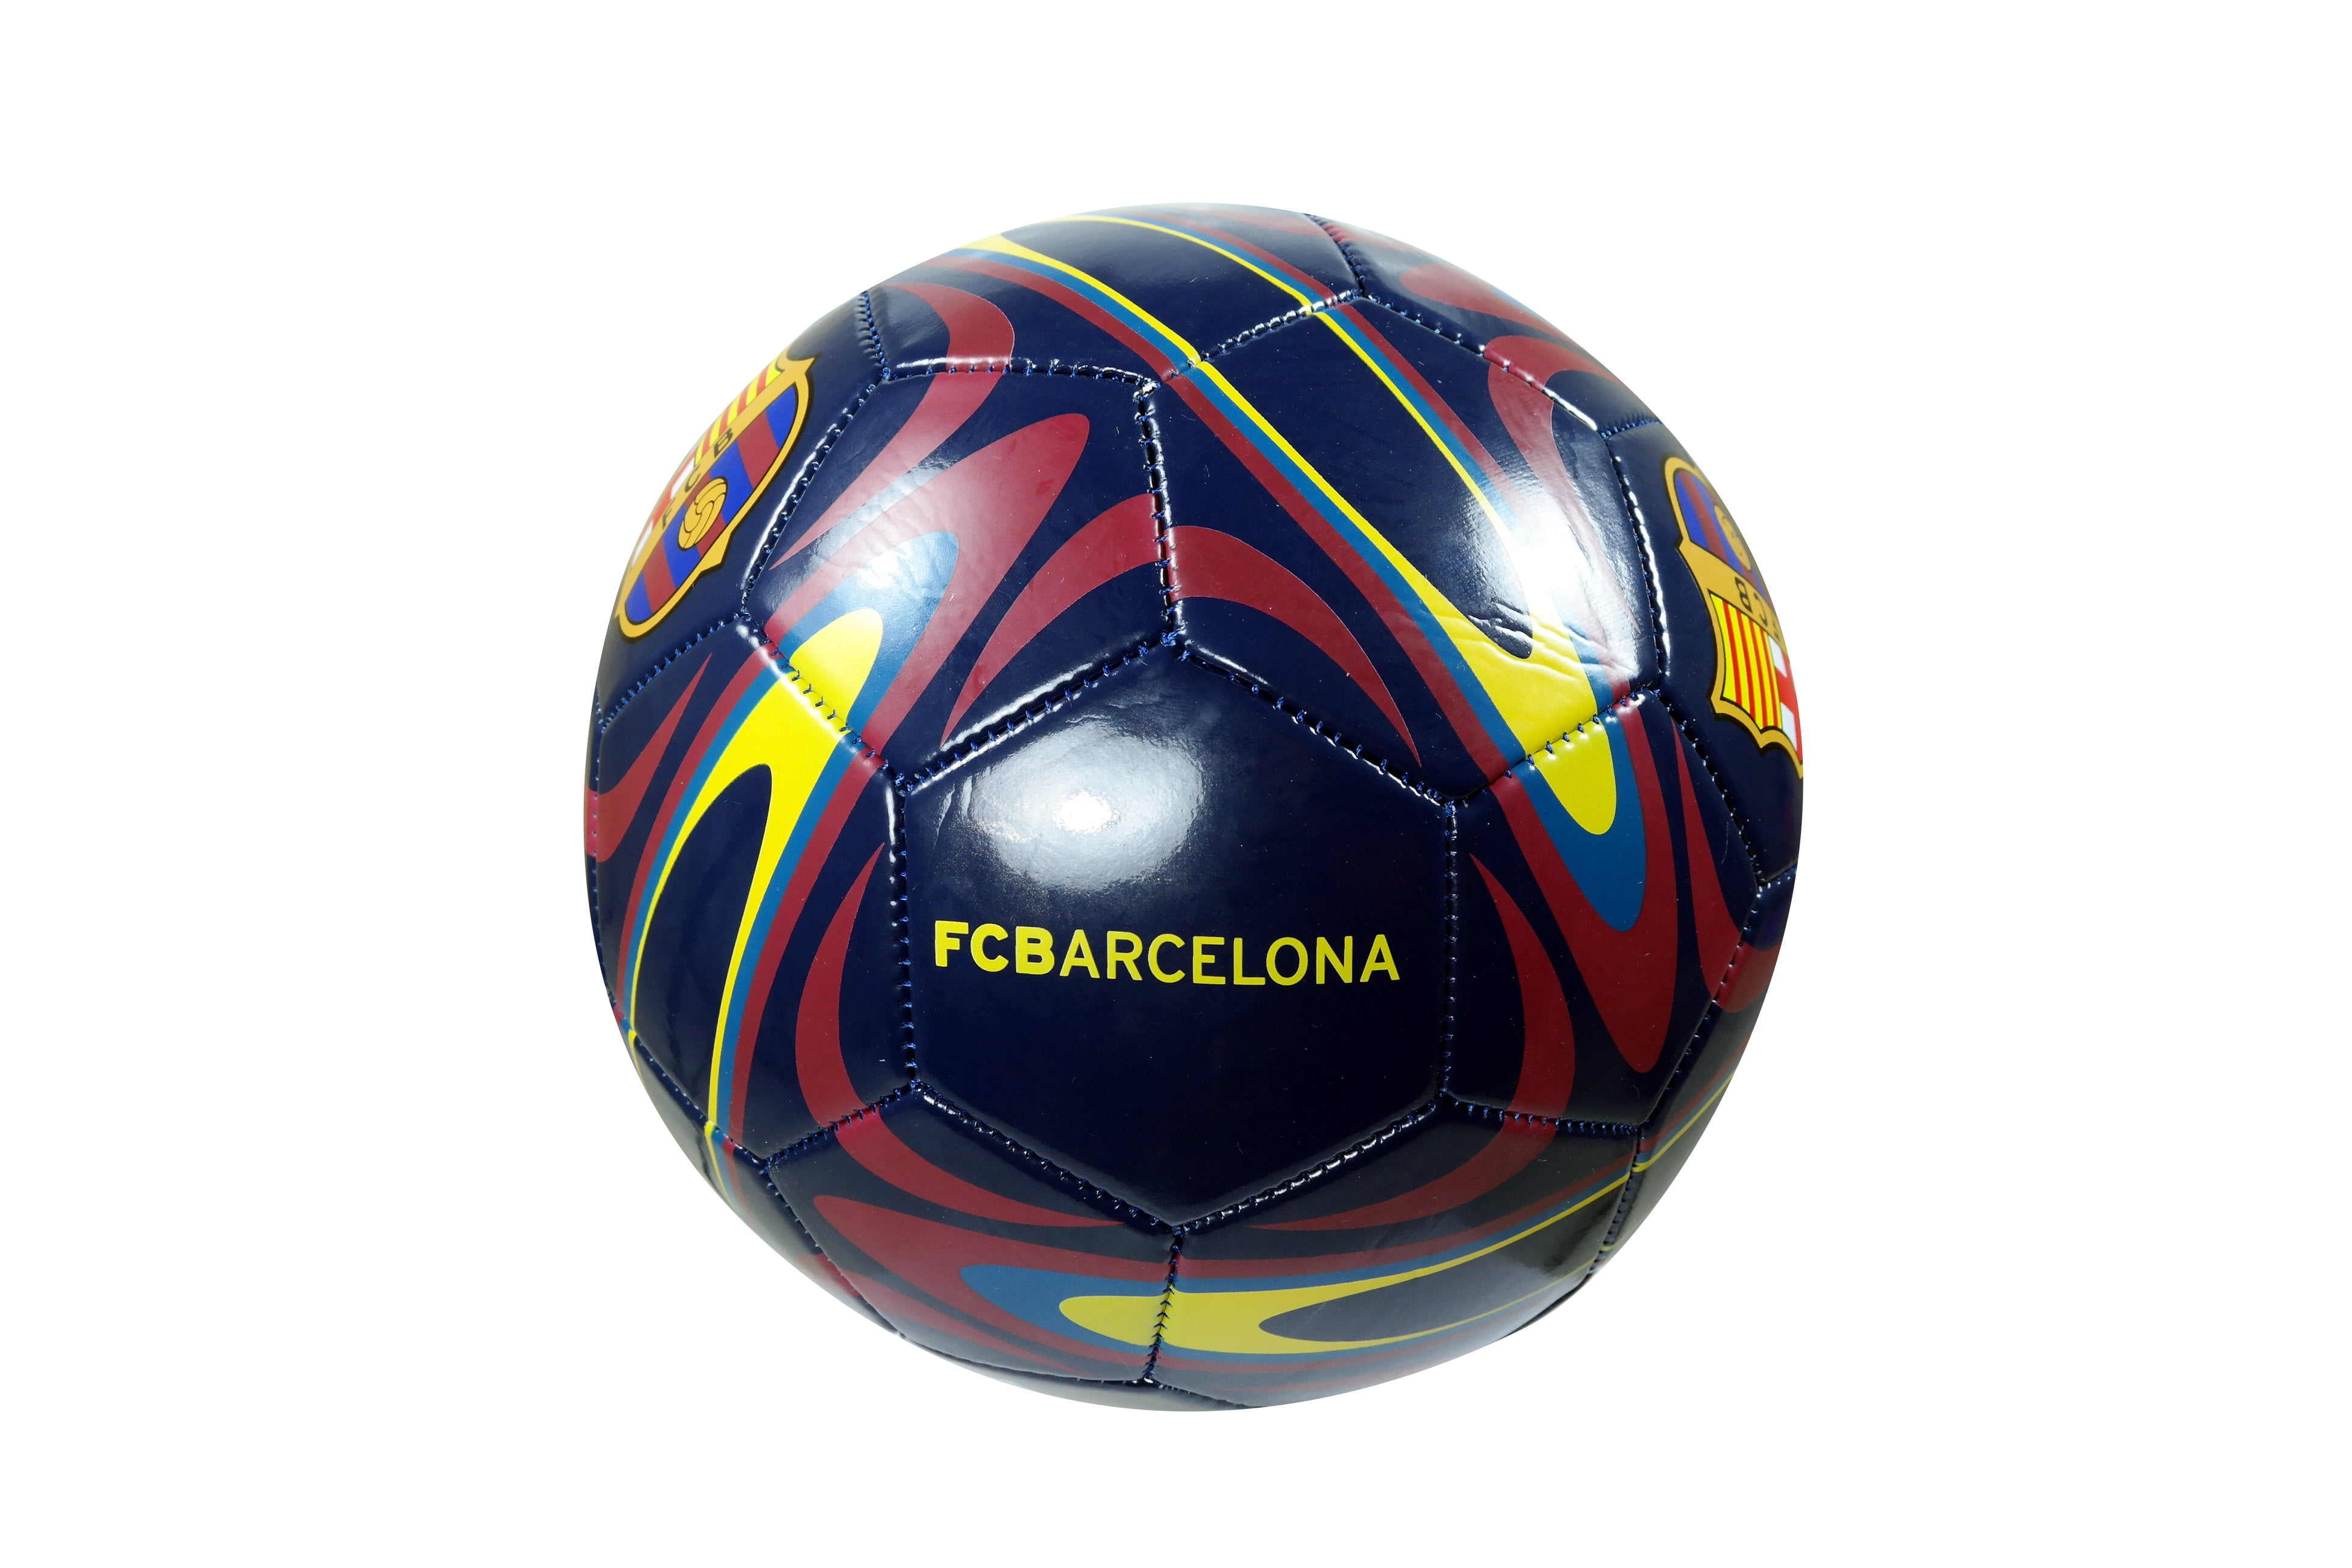 FCB Yellow with Blue Wavy Stripes Futbol Clu... Handsewn Futbol Soccer Ball 